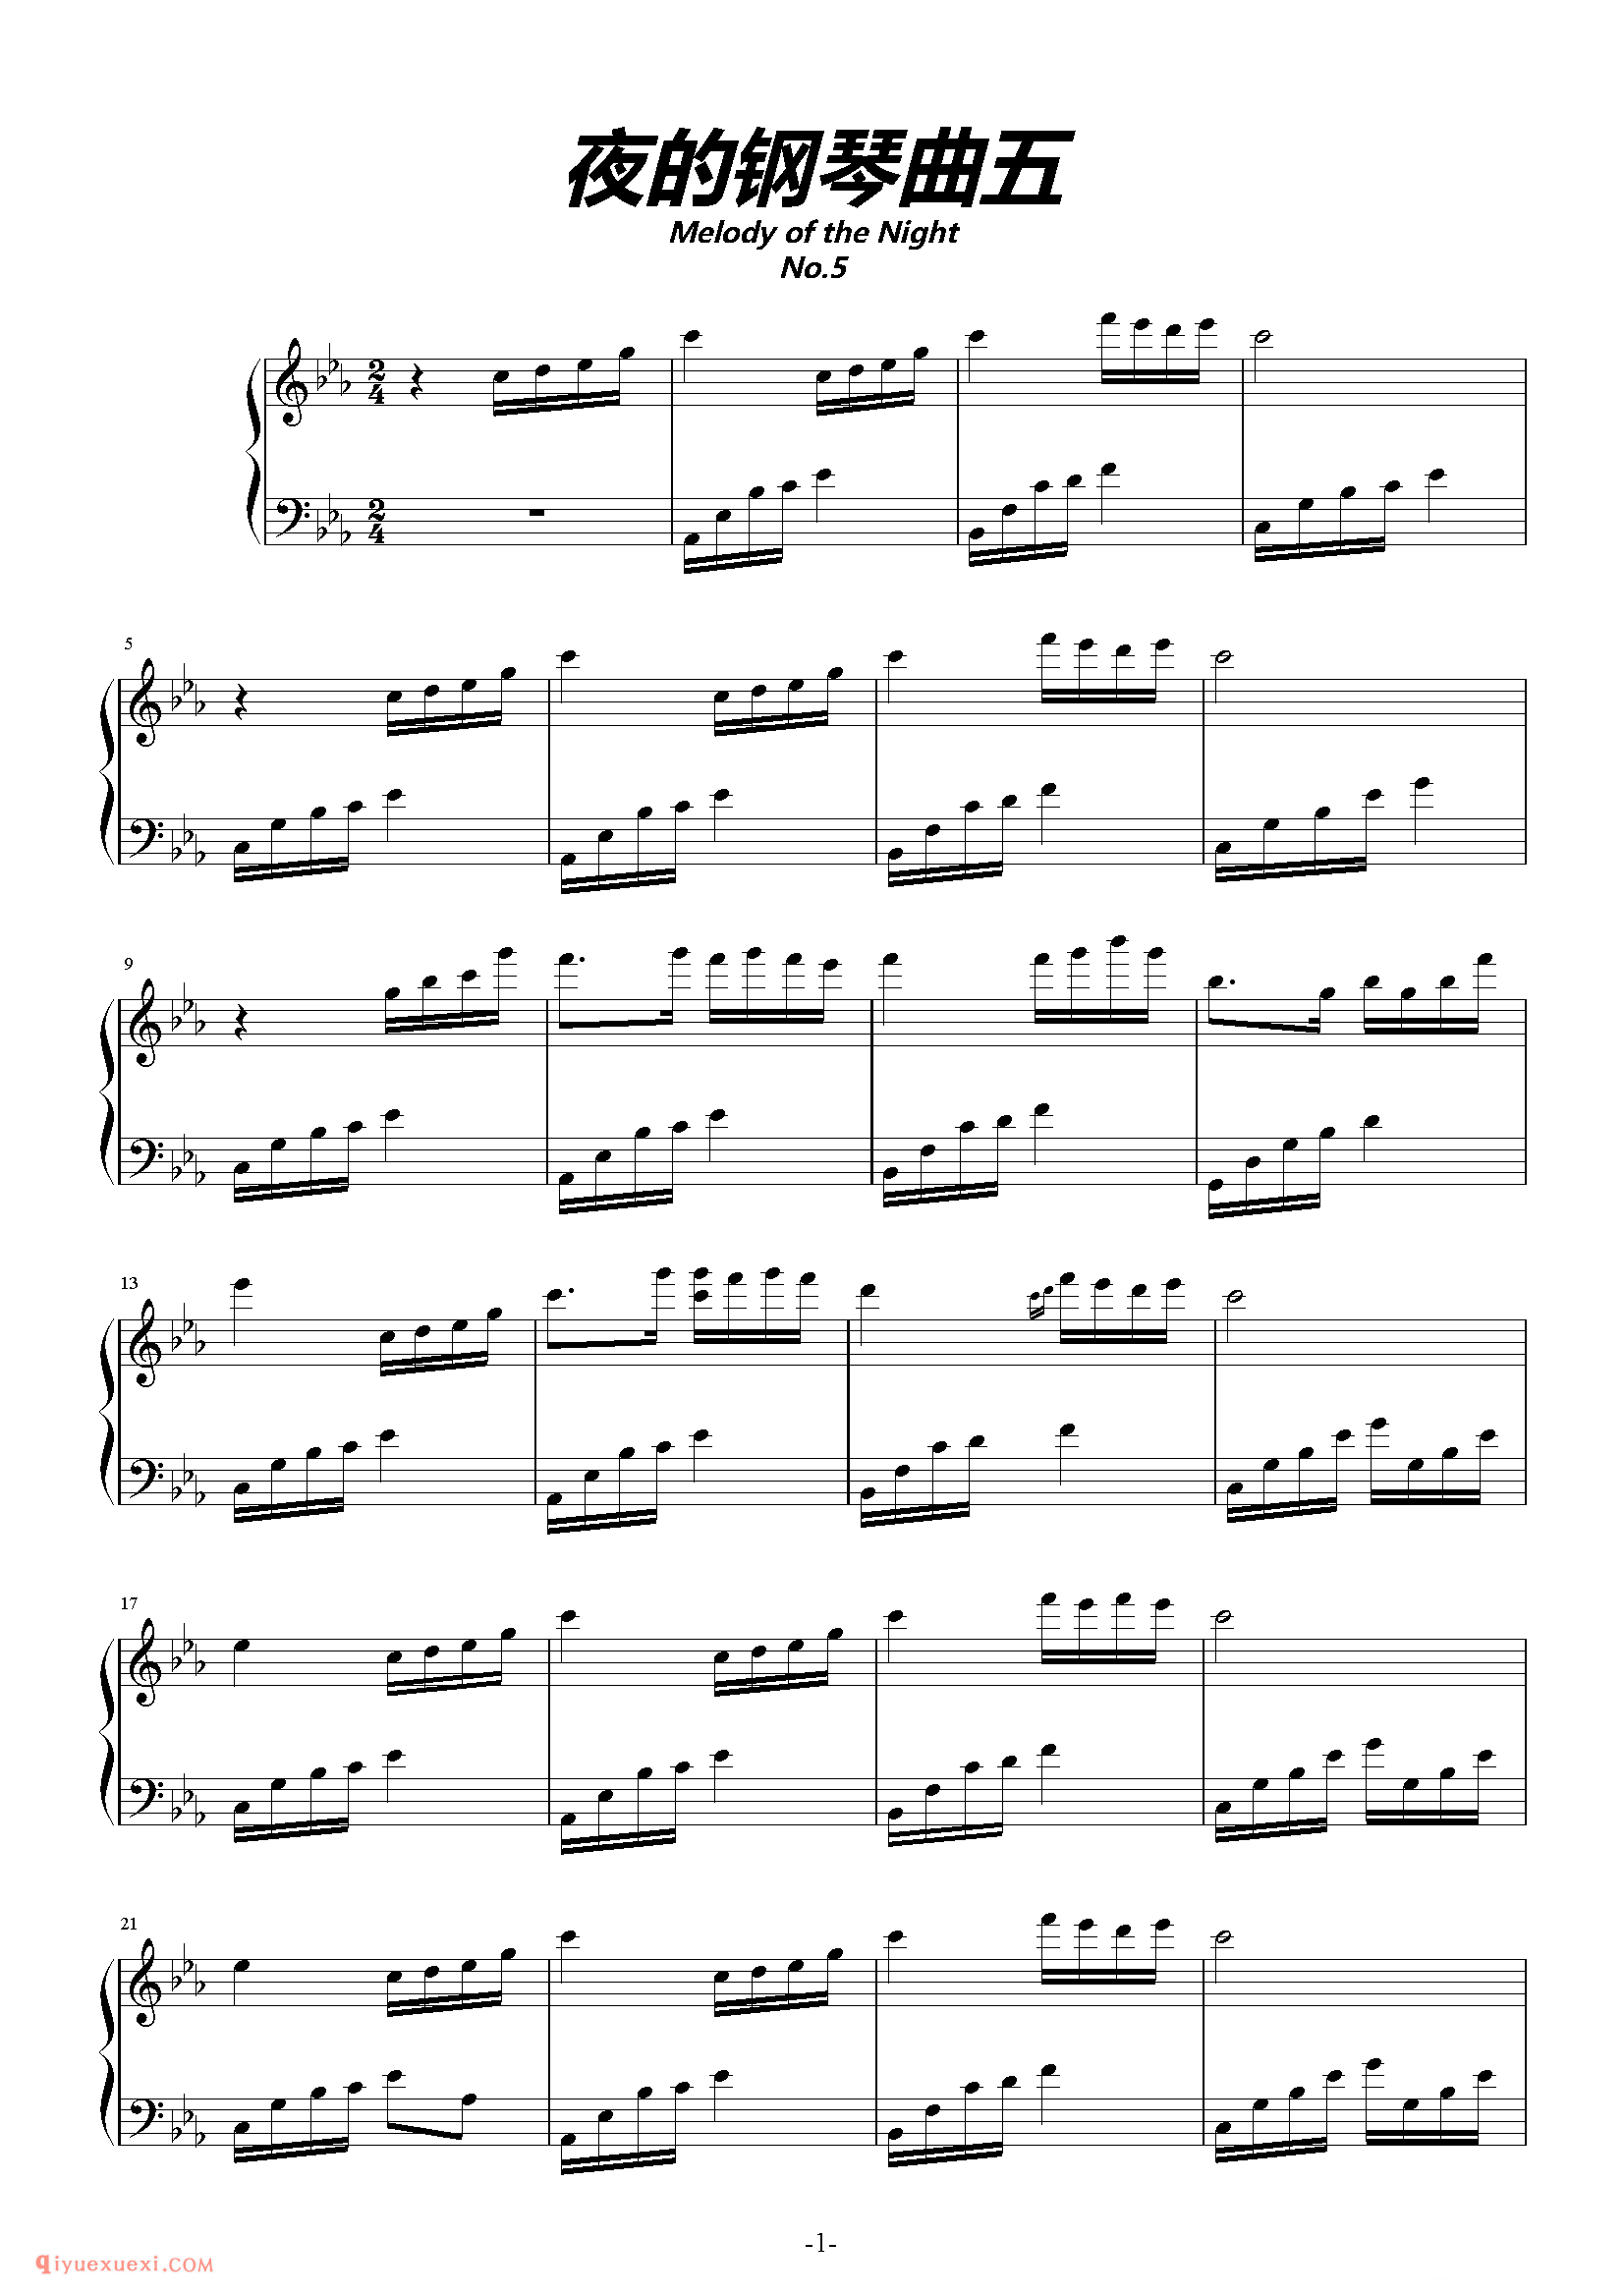 石进《夜的钢琴曲》第5首_石进夜的钢琴曲(5)五线谱